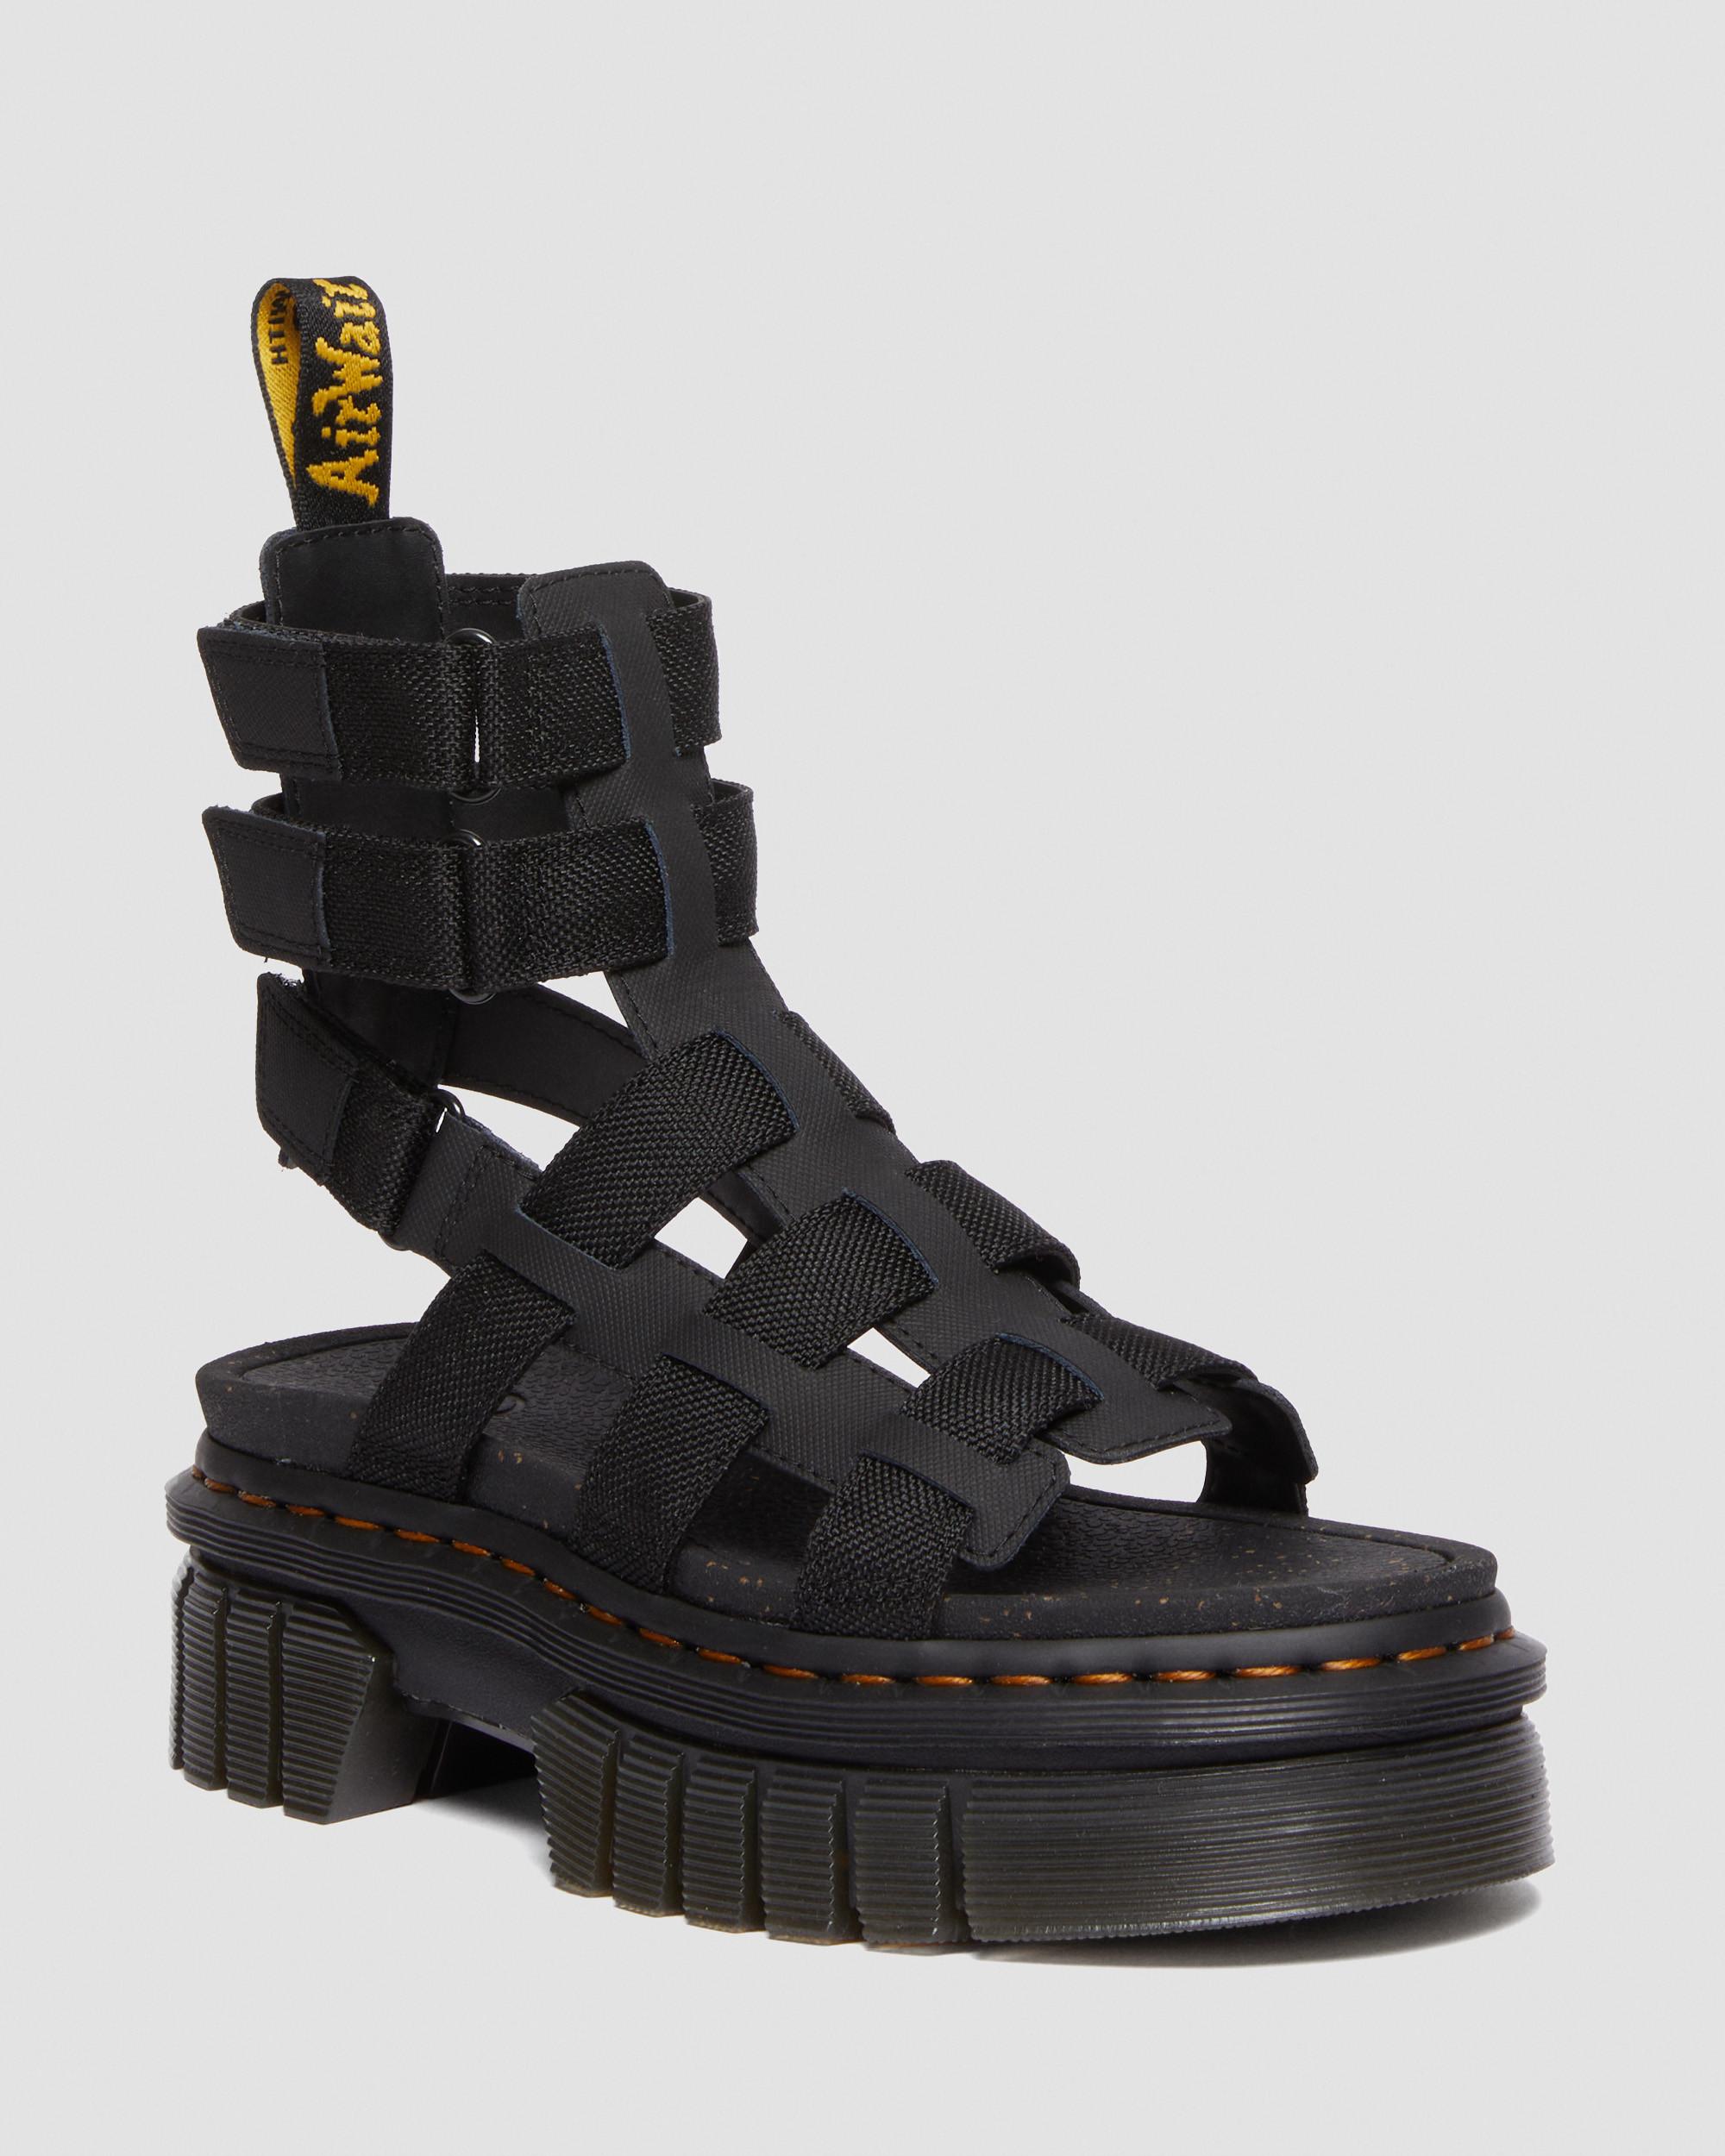 Uitreiken Voorzitter Elektrisch Ricki Leather Platform Gladiator Sandals | Dr. Martens